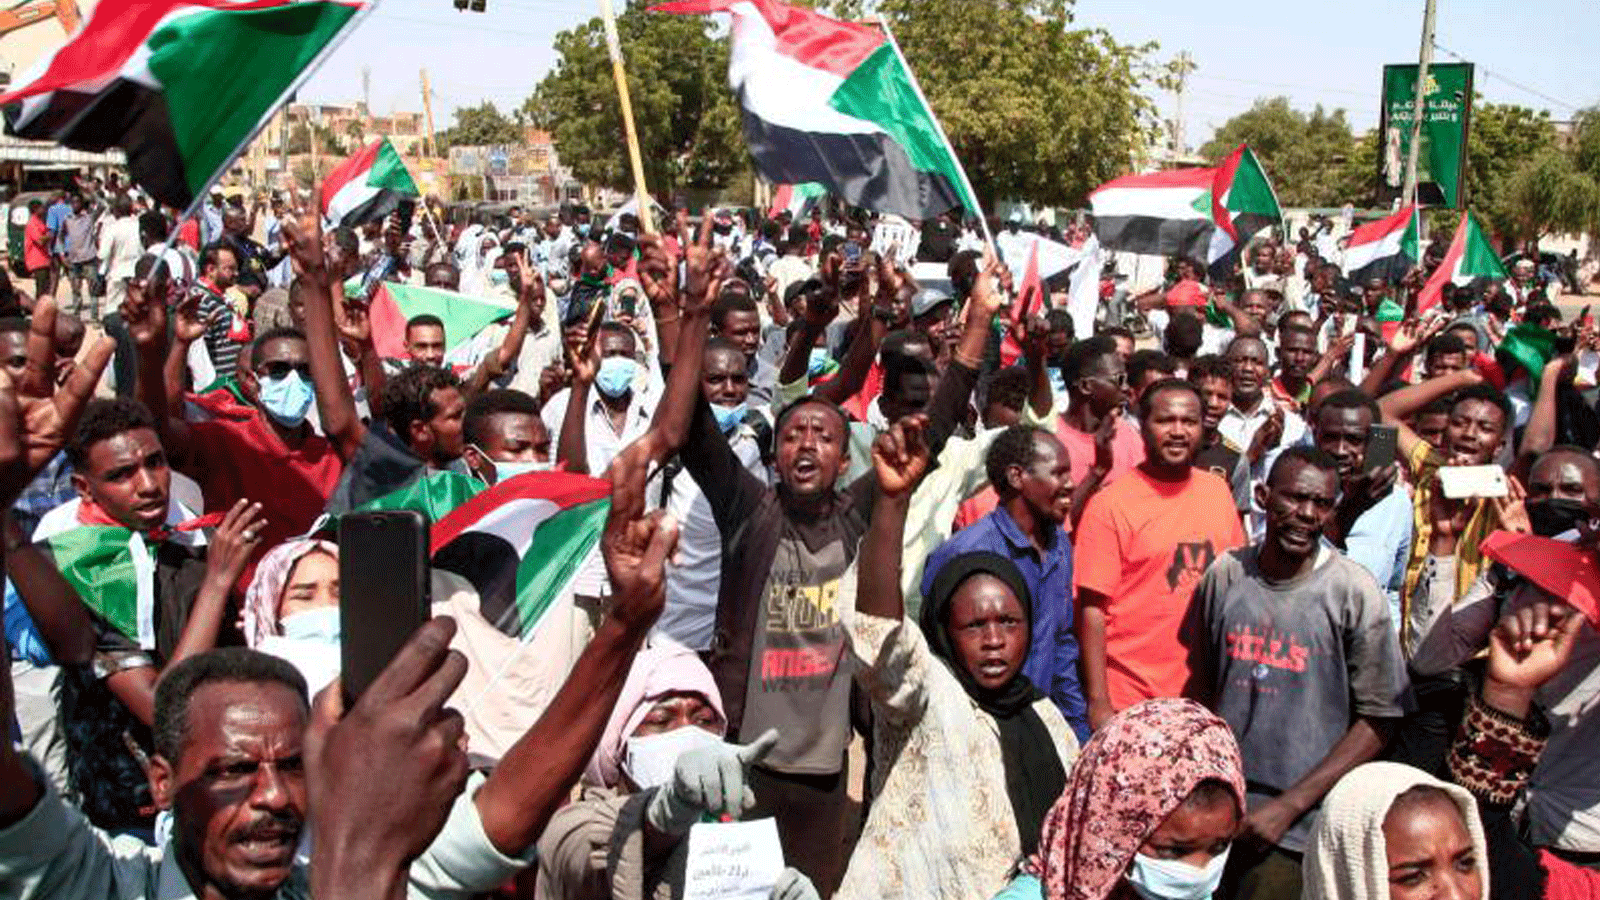 متظاهرون سودانيون ينزلون إلى شوارع أم درمان، المدينة التوأم للعاصمة الخرطوم، للمطالبة بانتقال الحكومة إلى الحكم المدني. 21 تشرين الأول/ أكتوبر 2021